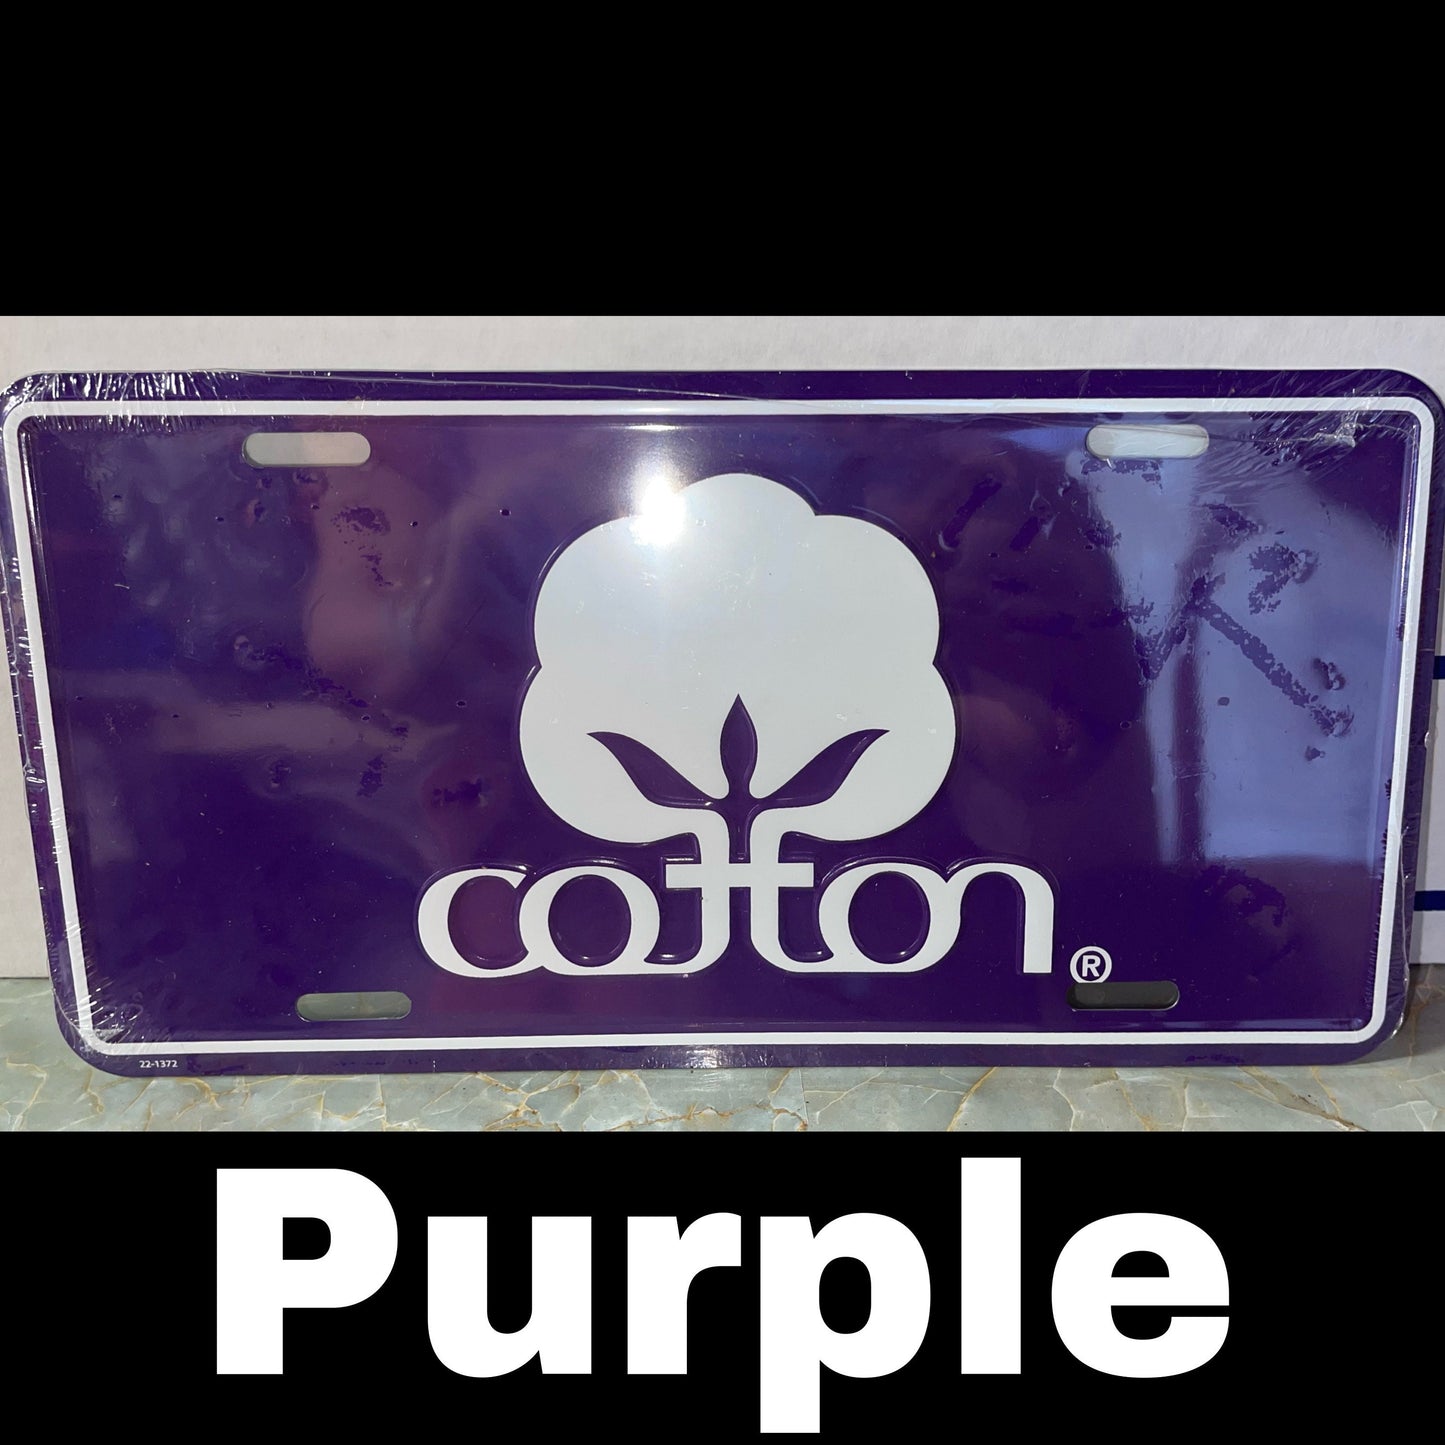 Cotton License Plate